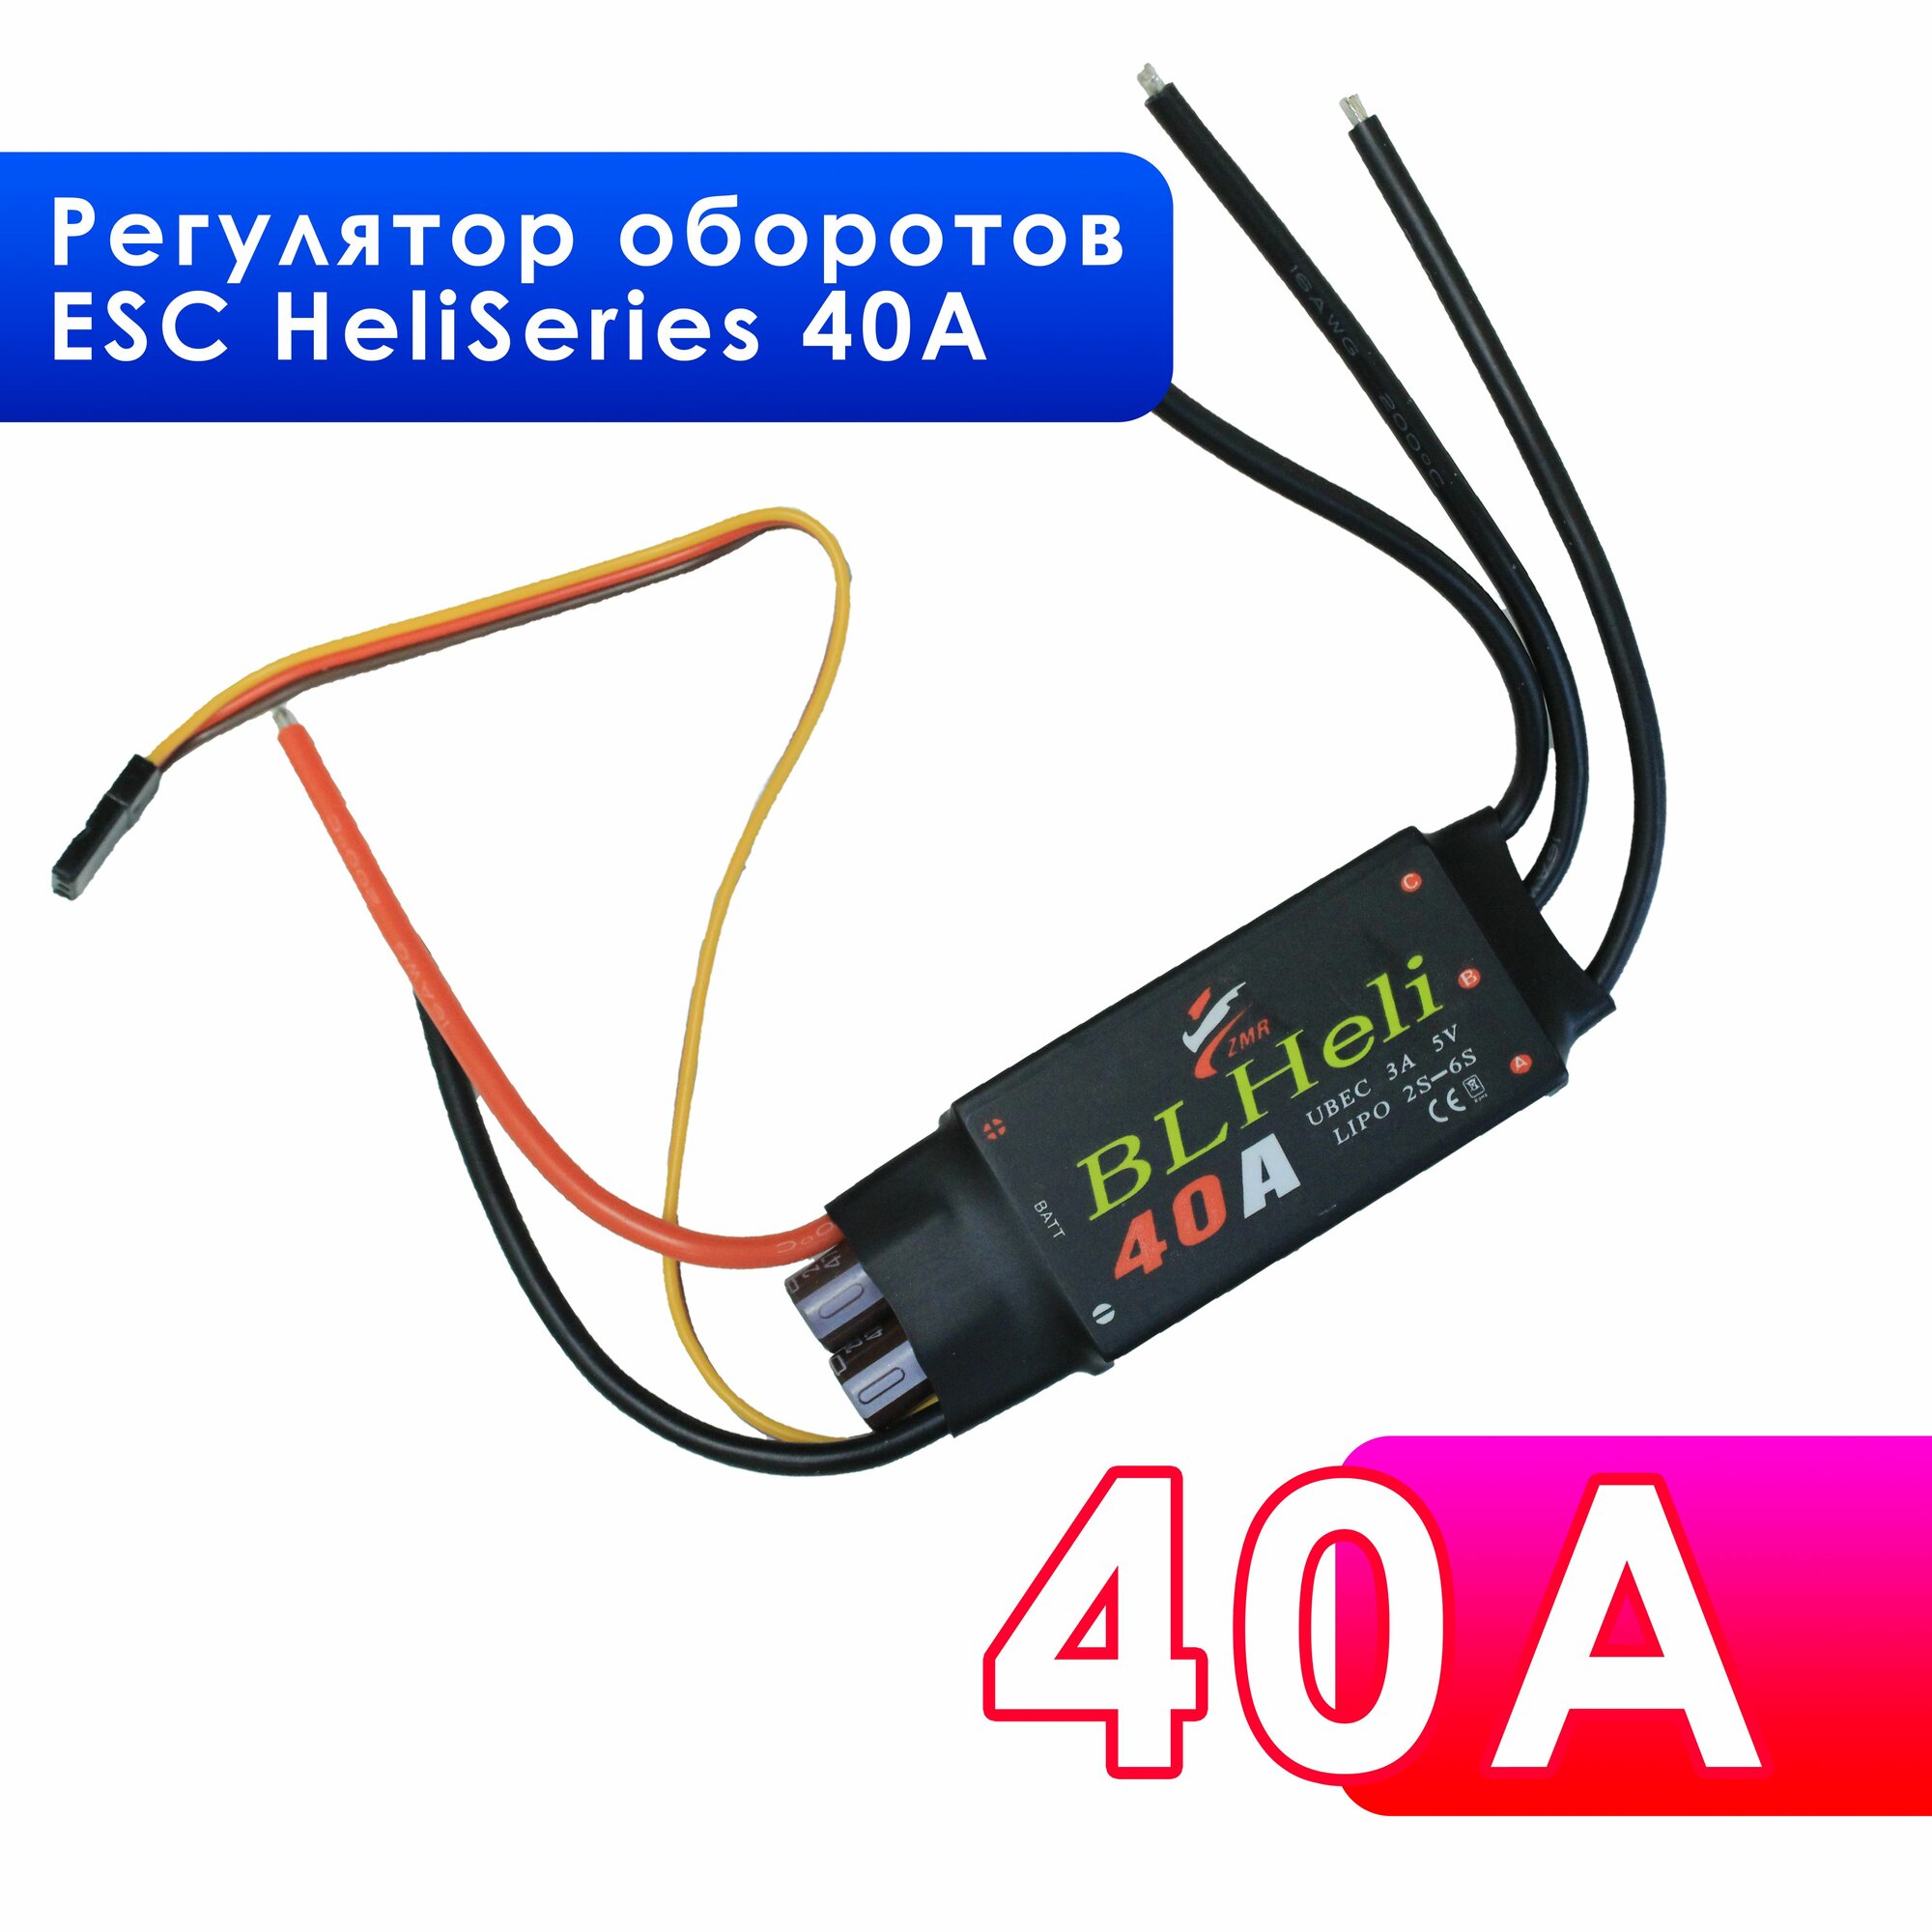 Регулятор оборотов, регулятор скорости двигателя ESC HeliSeries 40A для квадрокоптера и радиоуправляемых моделей